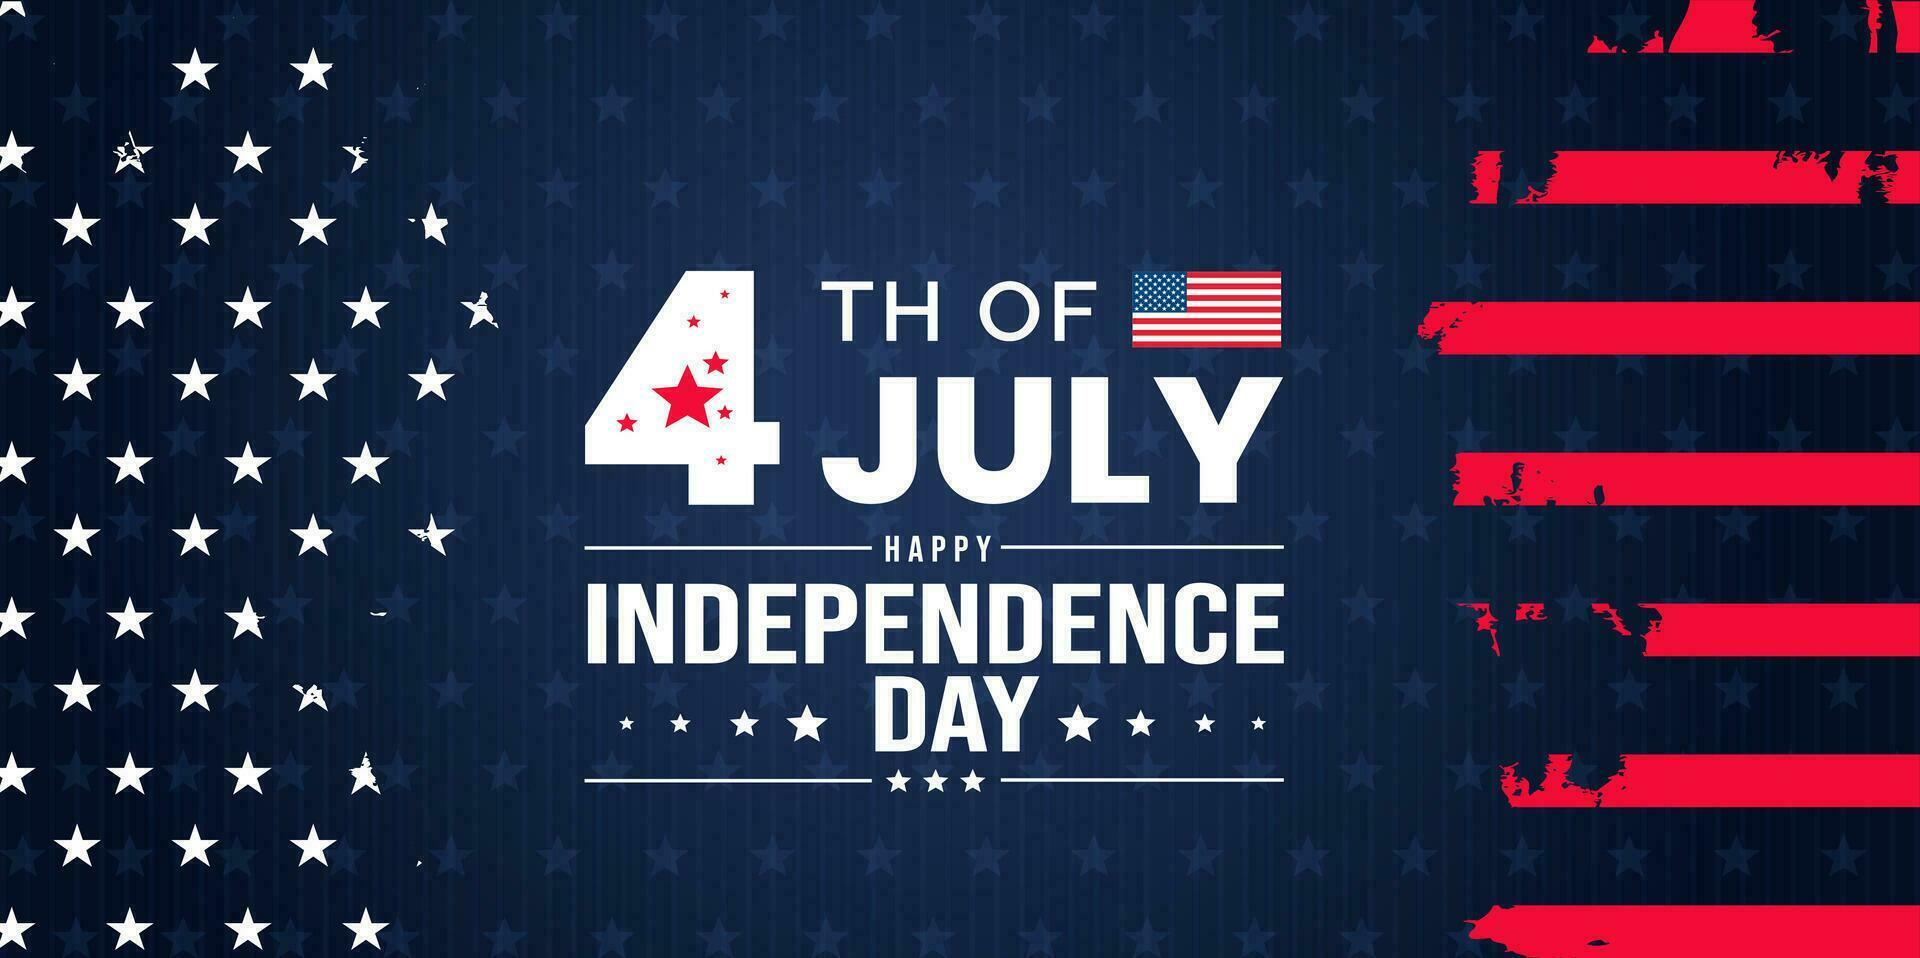 4e de juillet uni États indépendance journée fête promotion La publicité arrière-plan, affiche, carte ou bannière modèle avec américain drapeau et typographie. indépendance journée Etats-Unis de fête décoration. vecteur